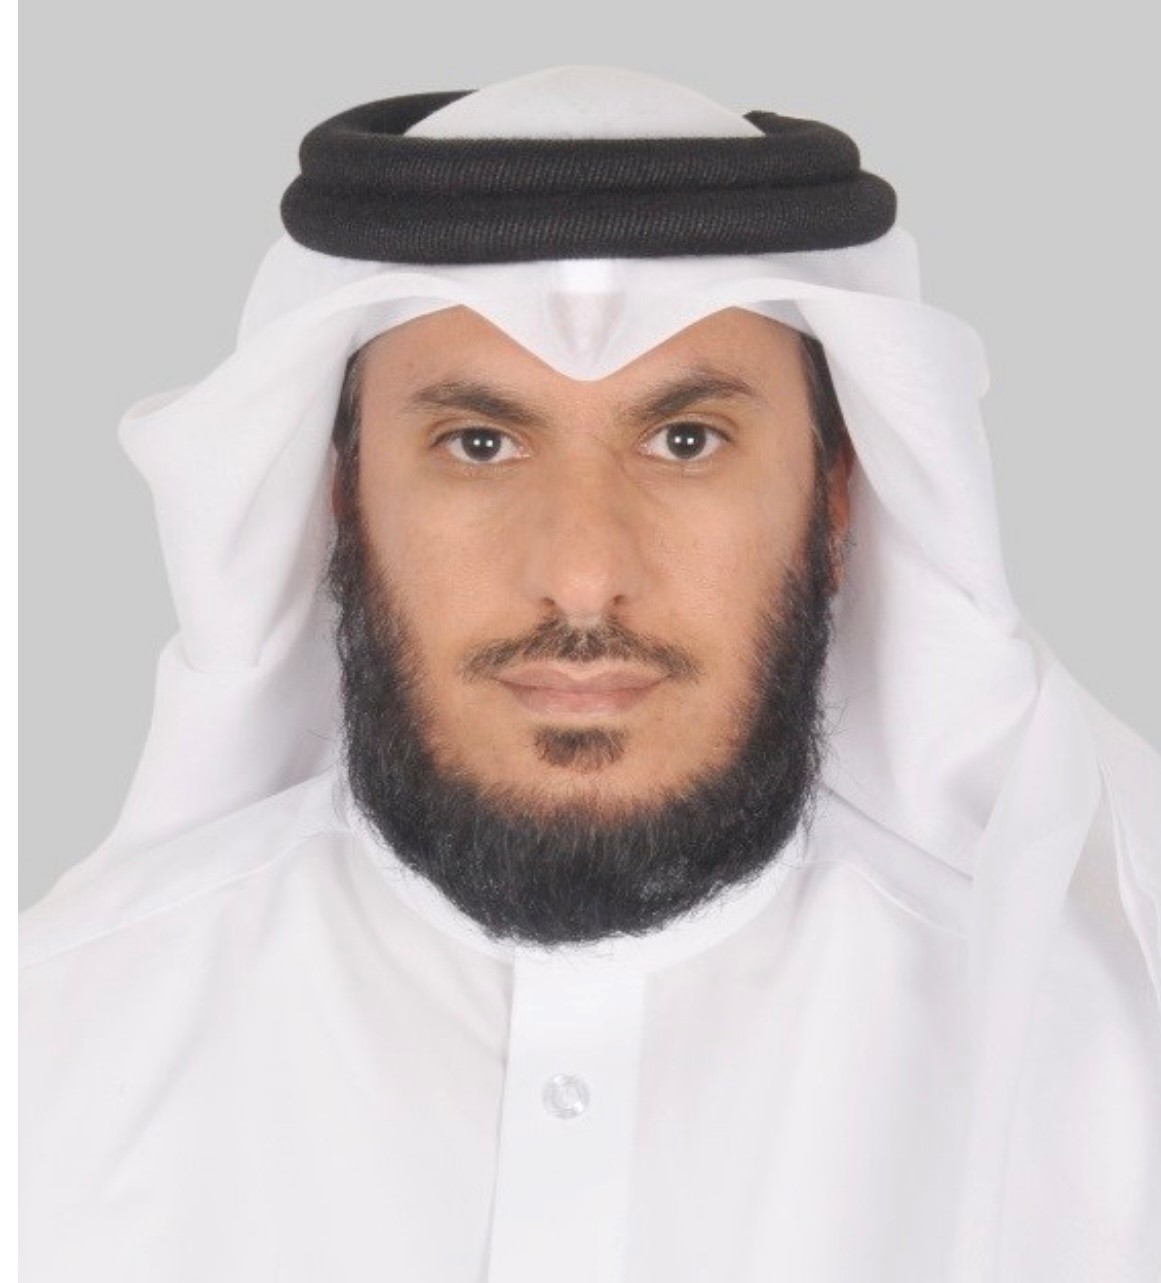 Mr. Mohamed Ali Al-Ghamdi